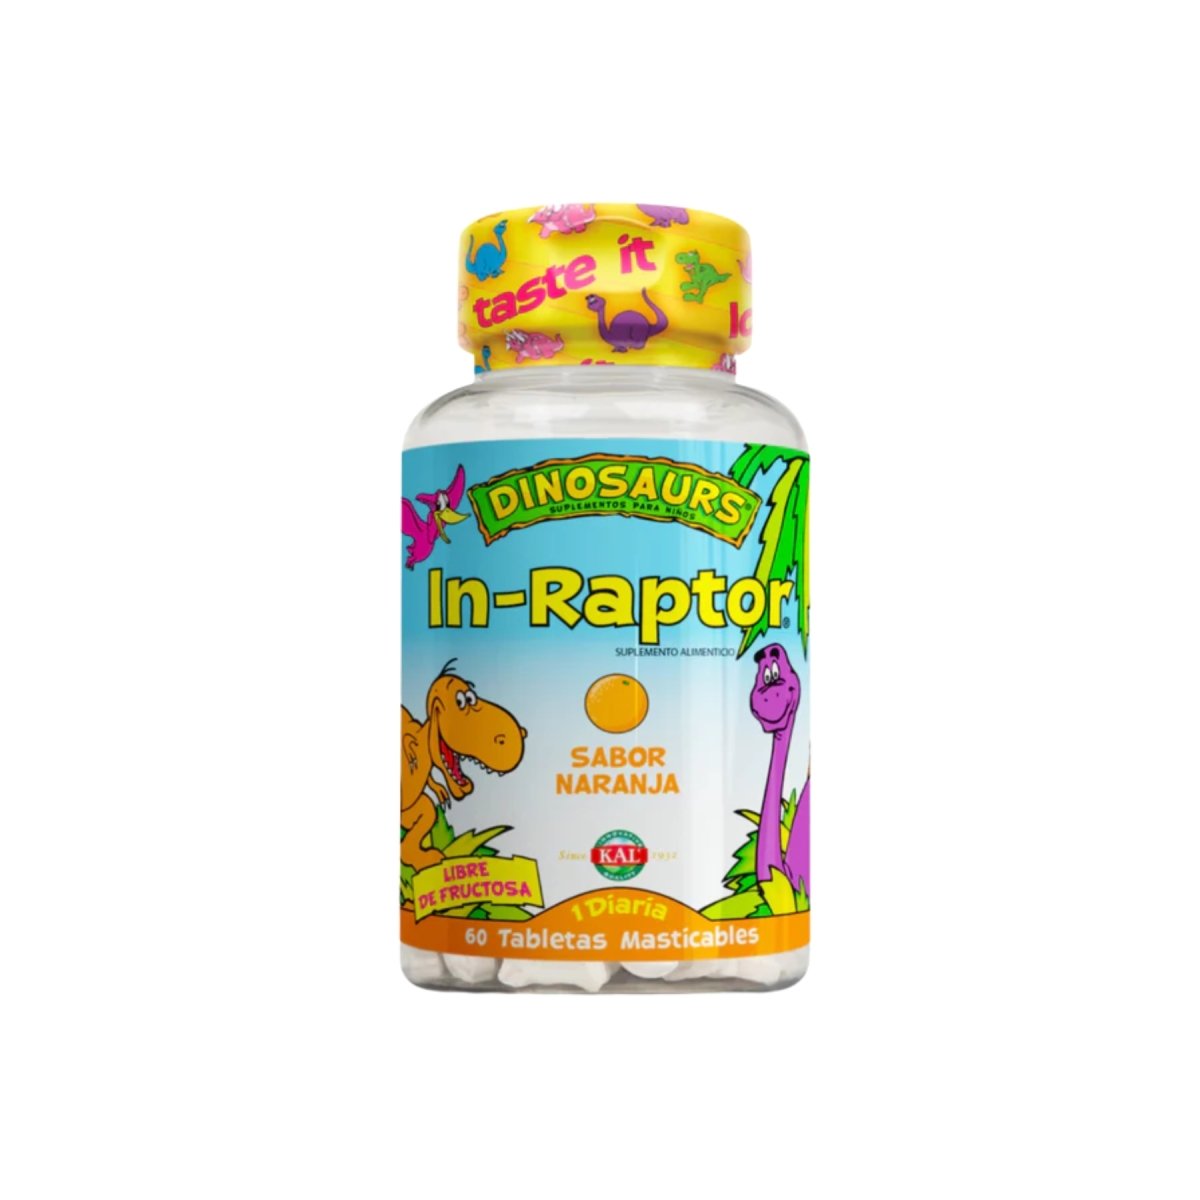 In- Raptor fuente de vitaminas - Good Express mx